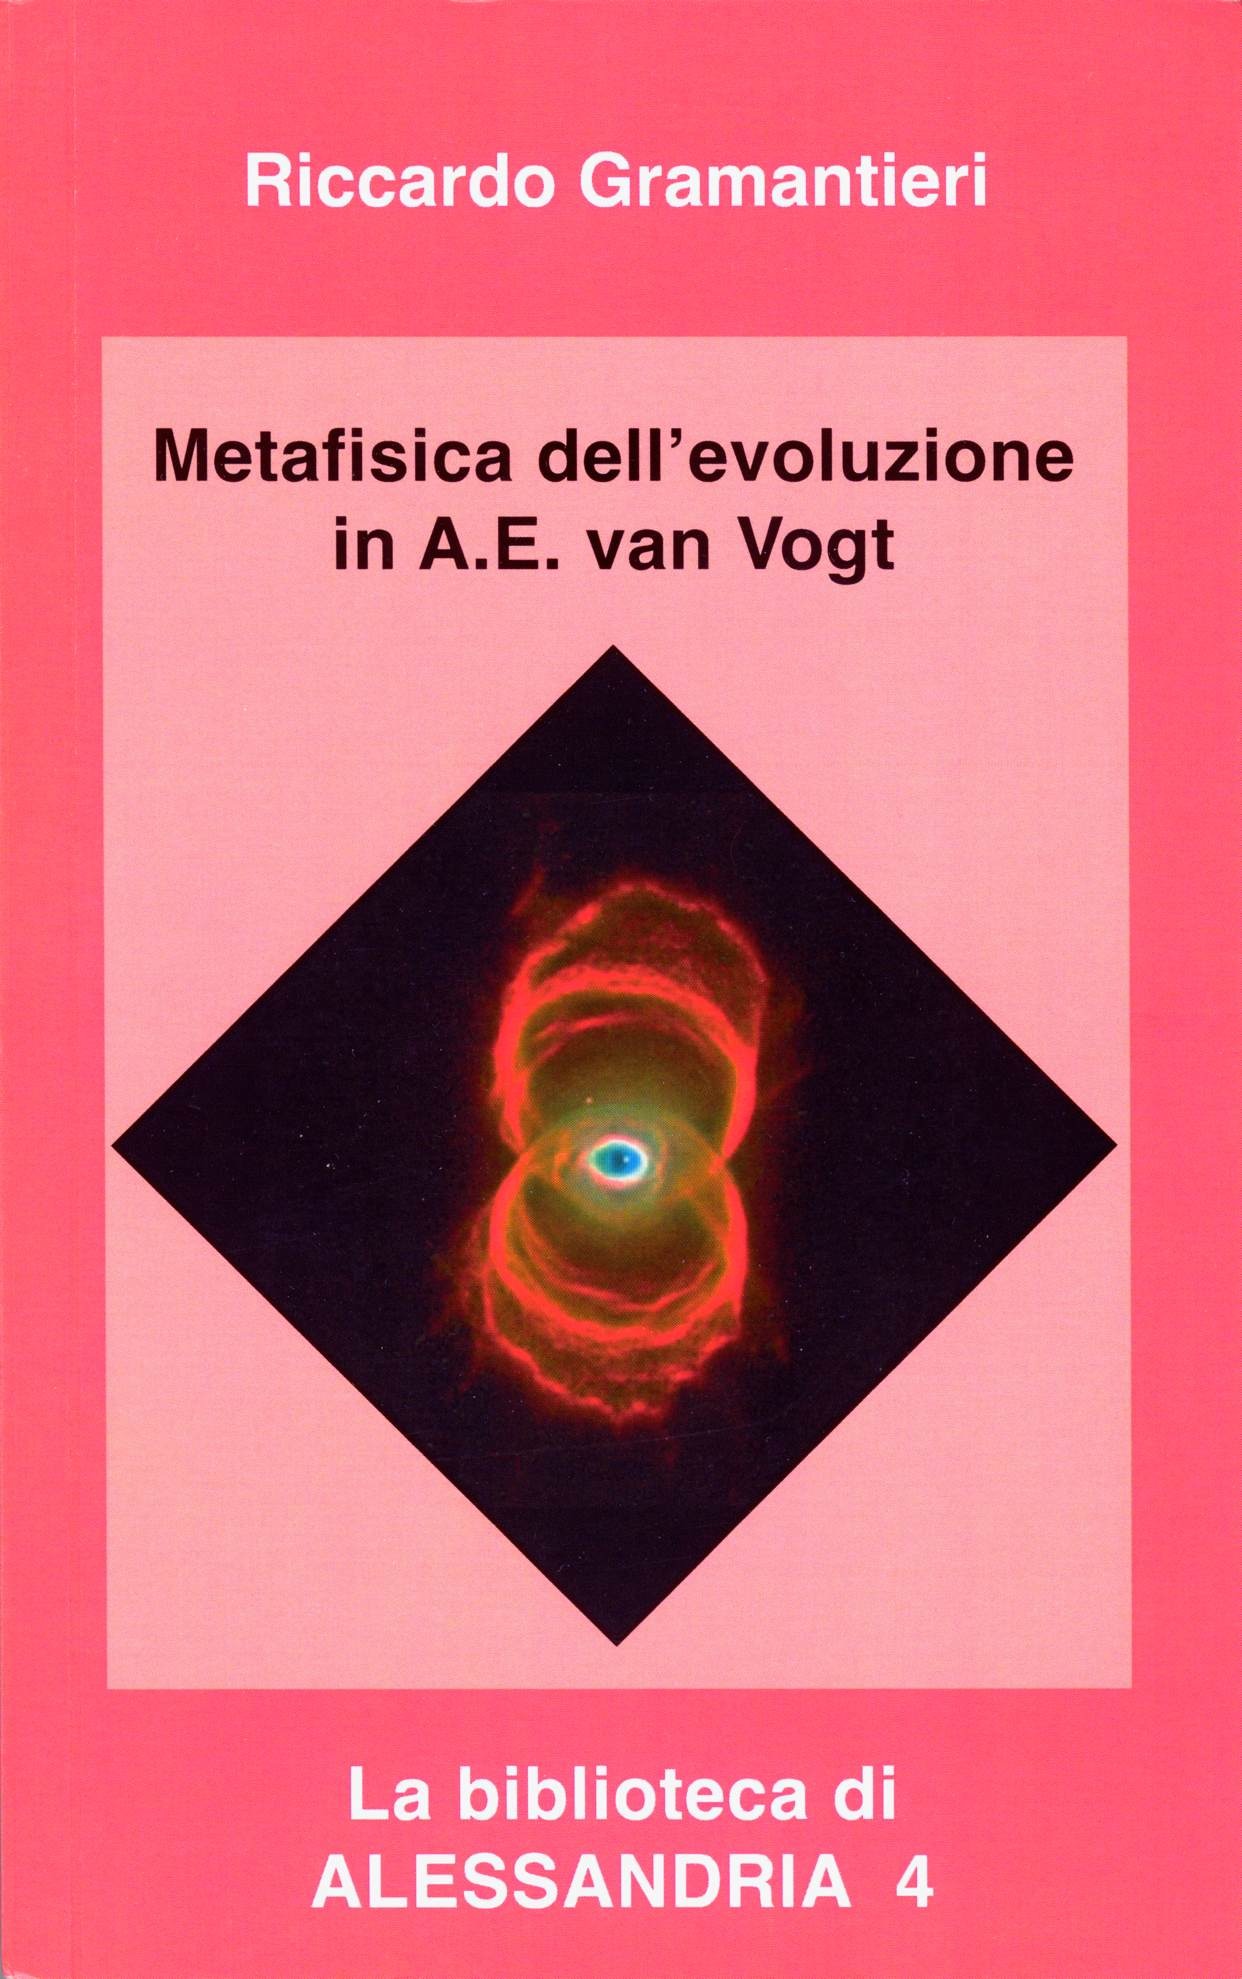 Metafisica dell'Evoluzione in A.E. van Vogt by Riccardo Gramantieri